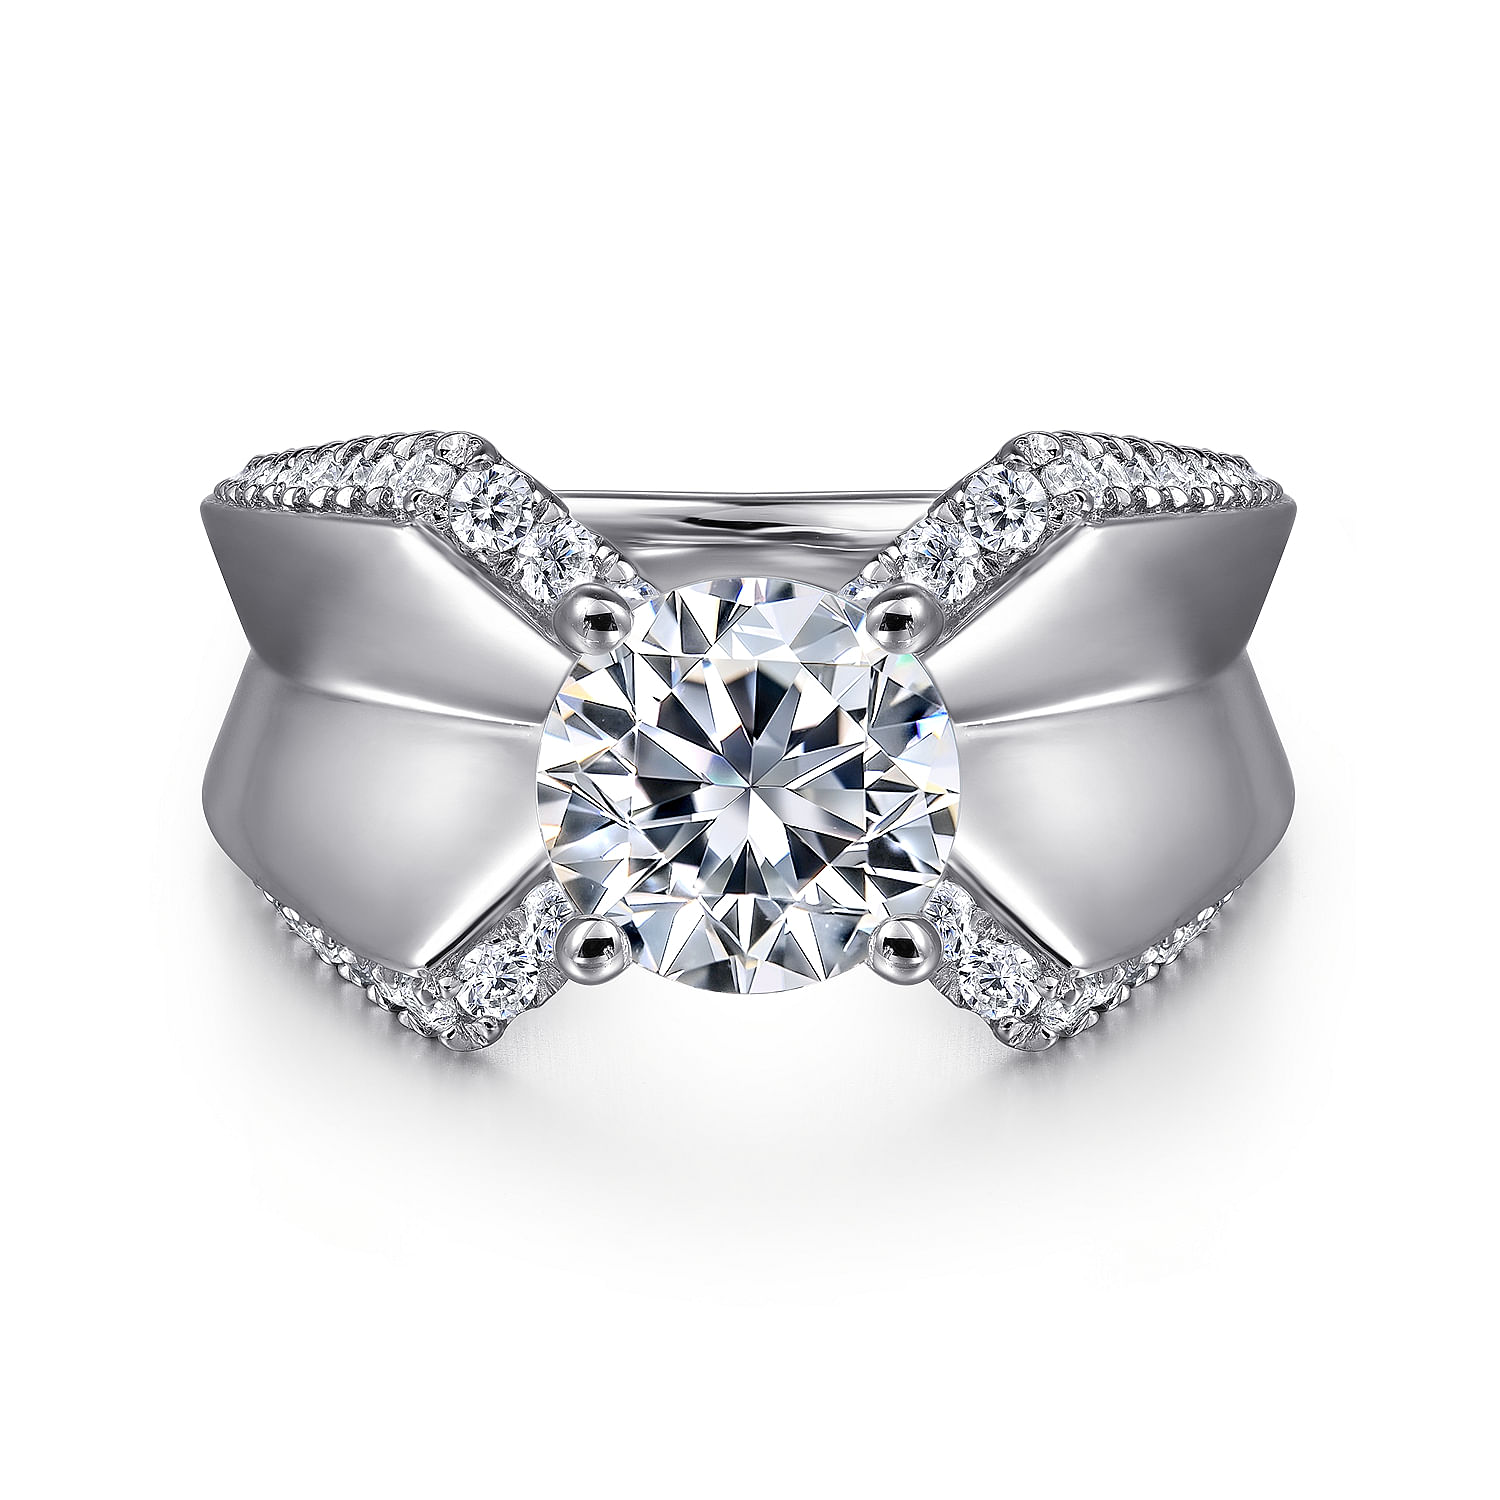 Miranda - 14K White Gold Round Diamond Engagement Ring